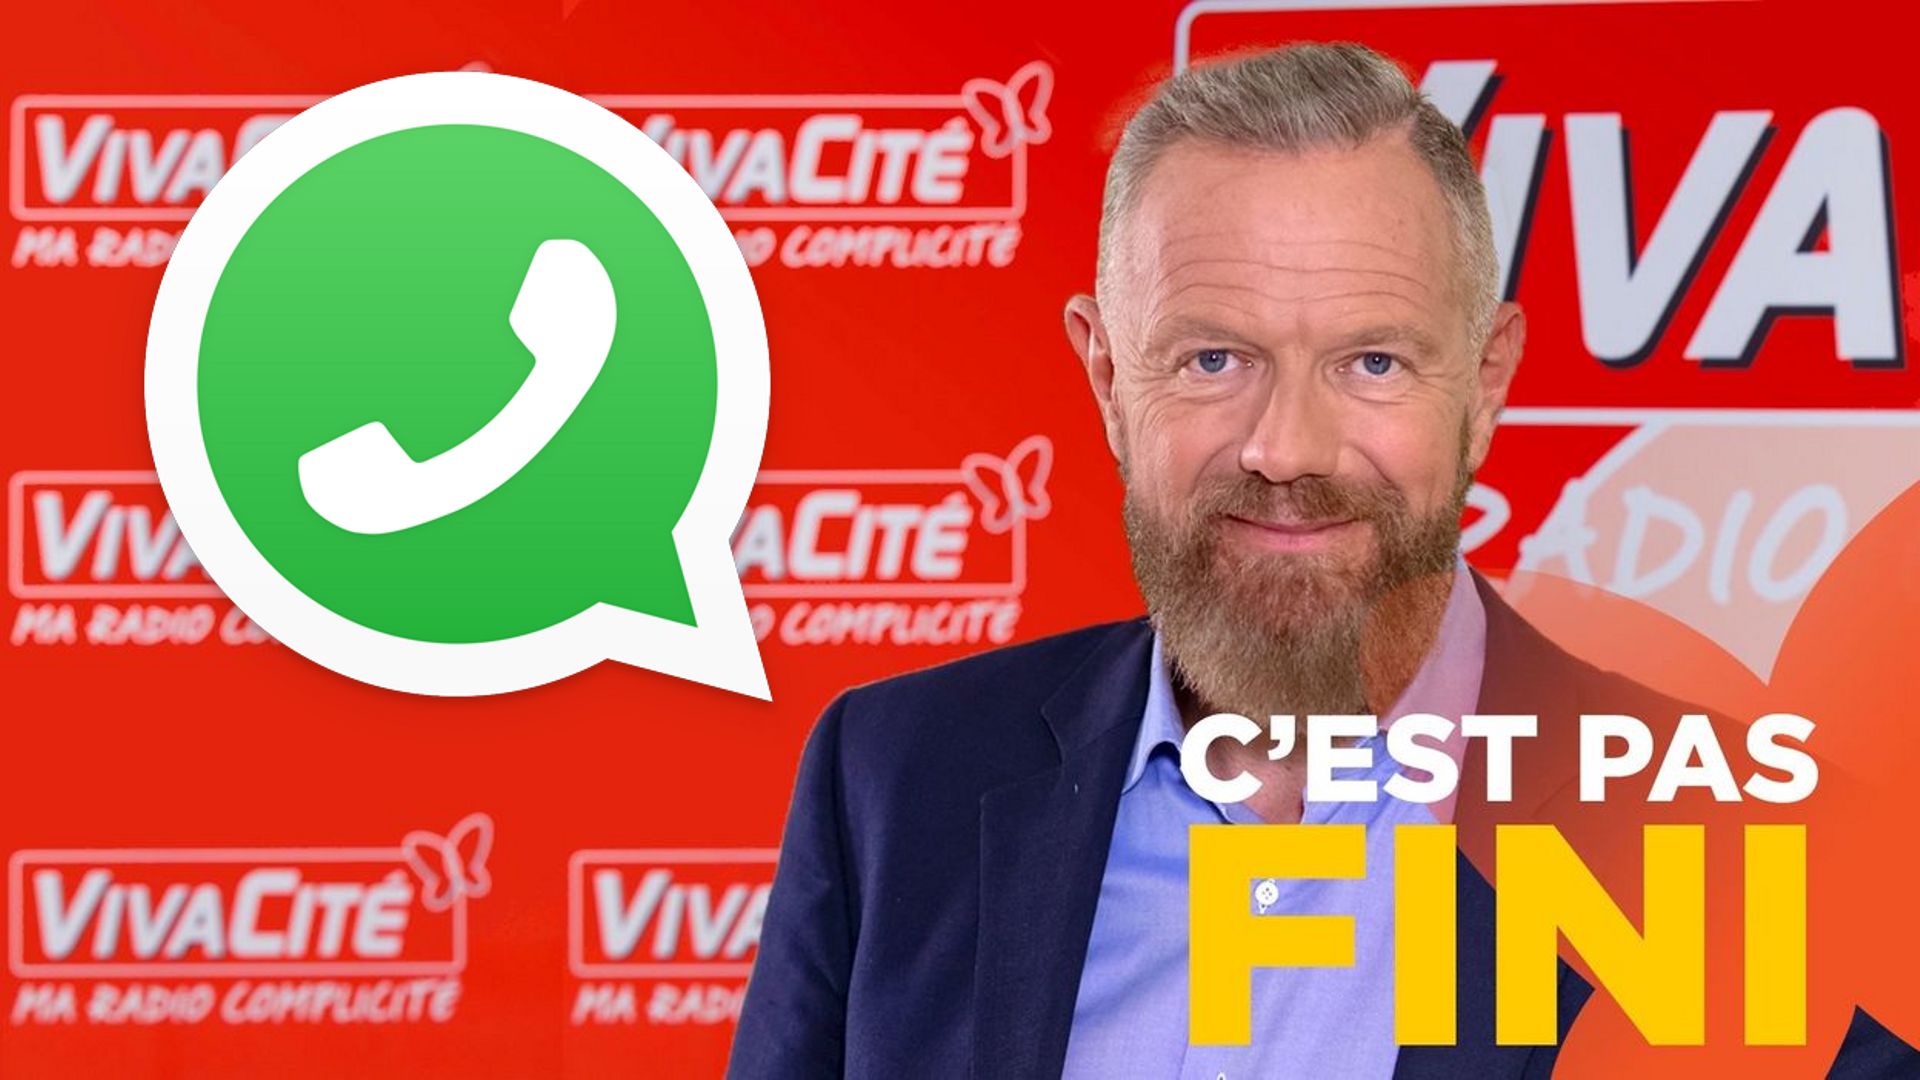 Participez aux débats de "C'est pas fini!" grâce à WhatsApp!